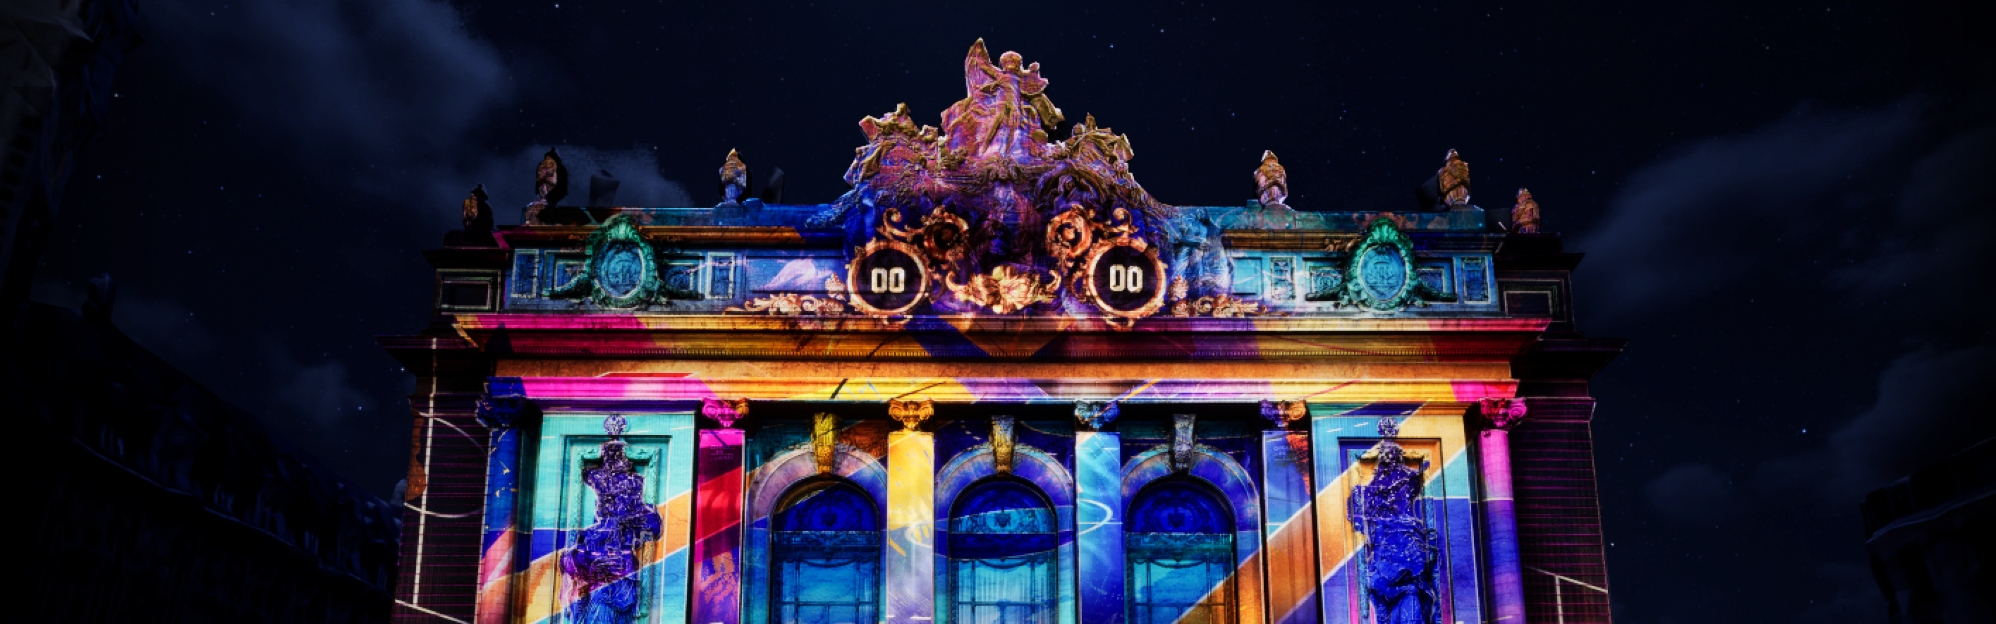 Durant les Jeux Olympiques, la MEL proposera un vidéo mapping inédit sur la façade de l’Opéra de Lille